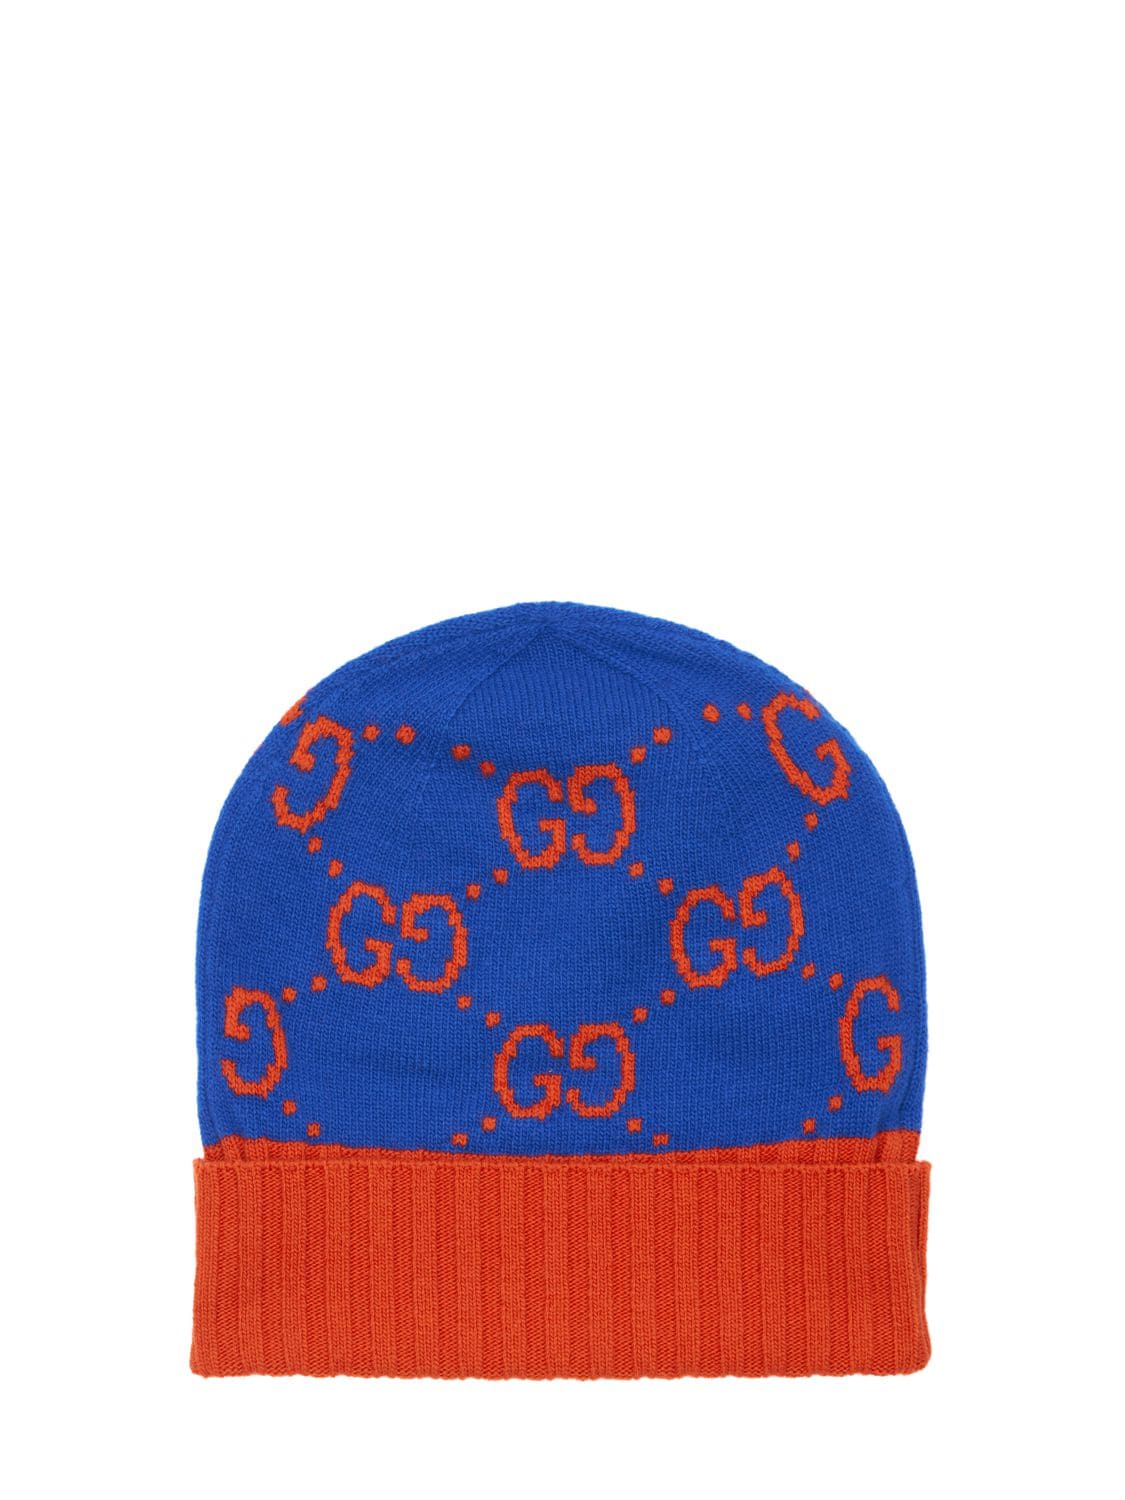 Much G Wool Knit Beanie Hat